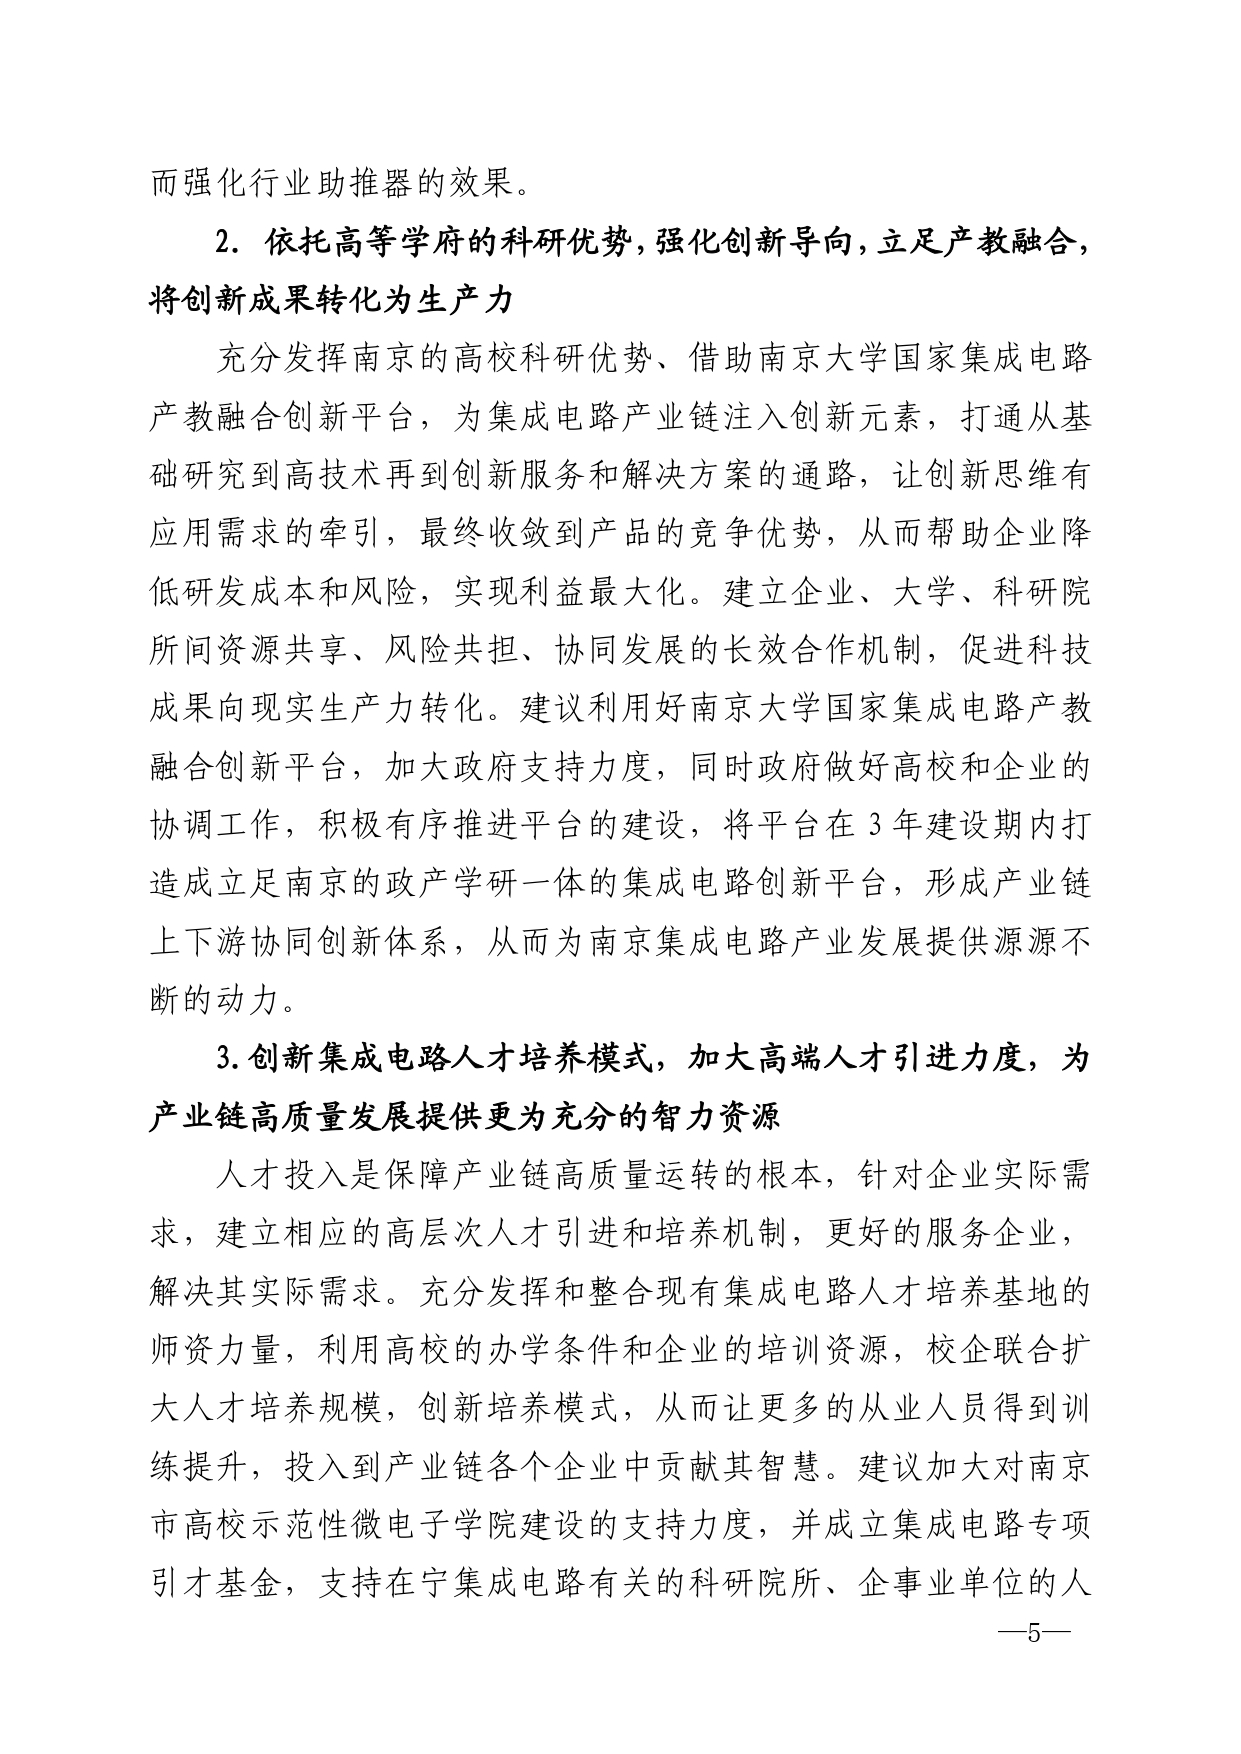 2021年第5期（关于南京市集成电路产业链高质量发展的建议）_page-0005.jpg